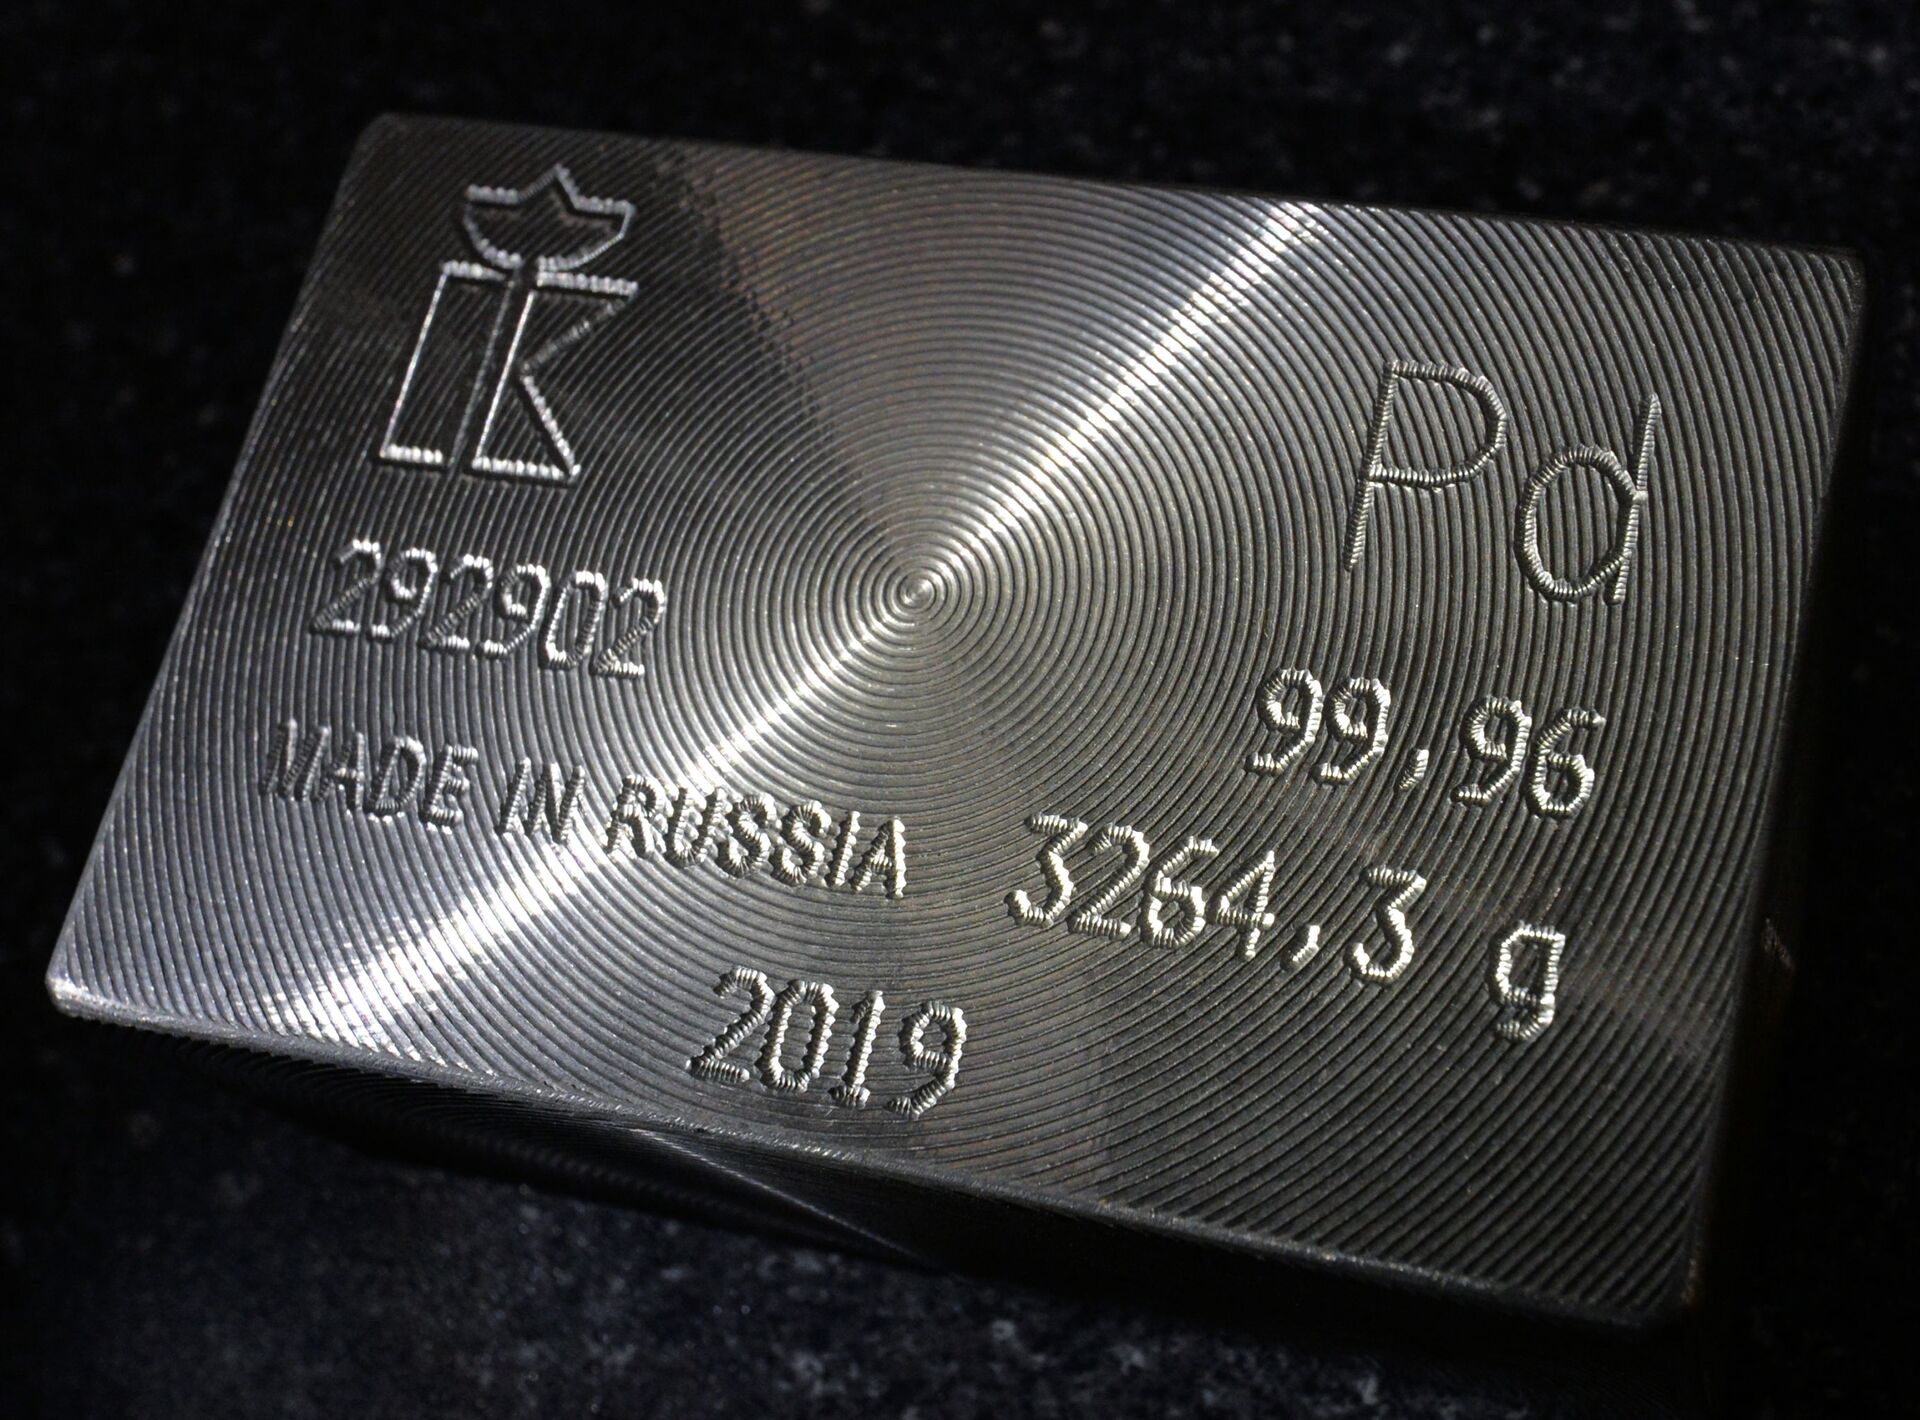 Preço de um metal raro e precioso aumentou 131% em 2021 ultrapassando até bitcoin - Sputnik Brasil, 1920, 03.04.2021